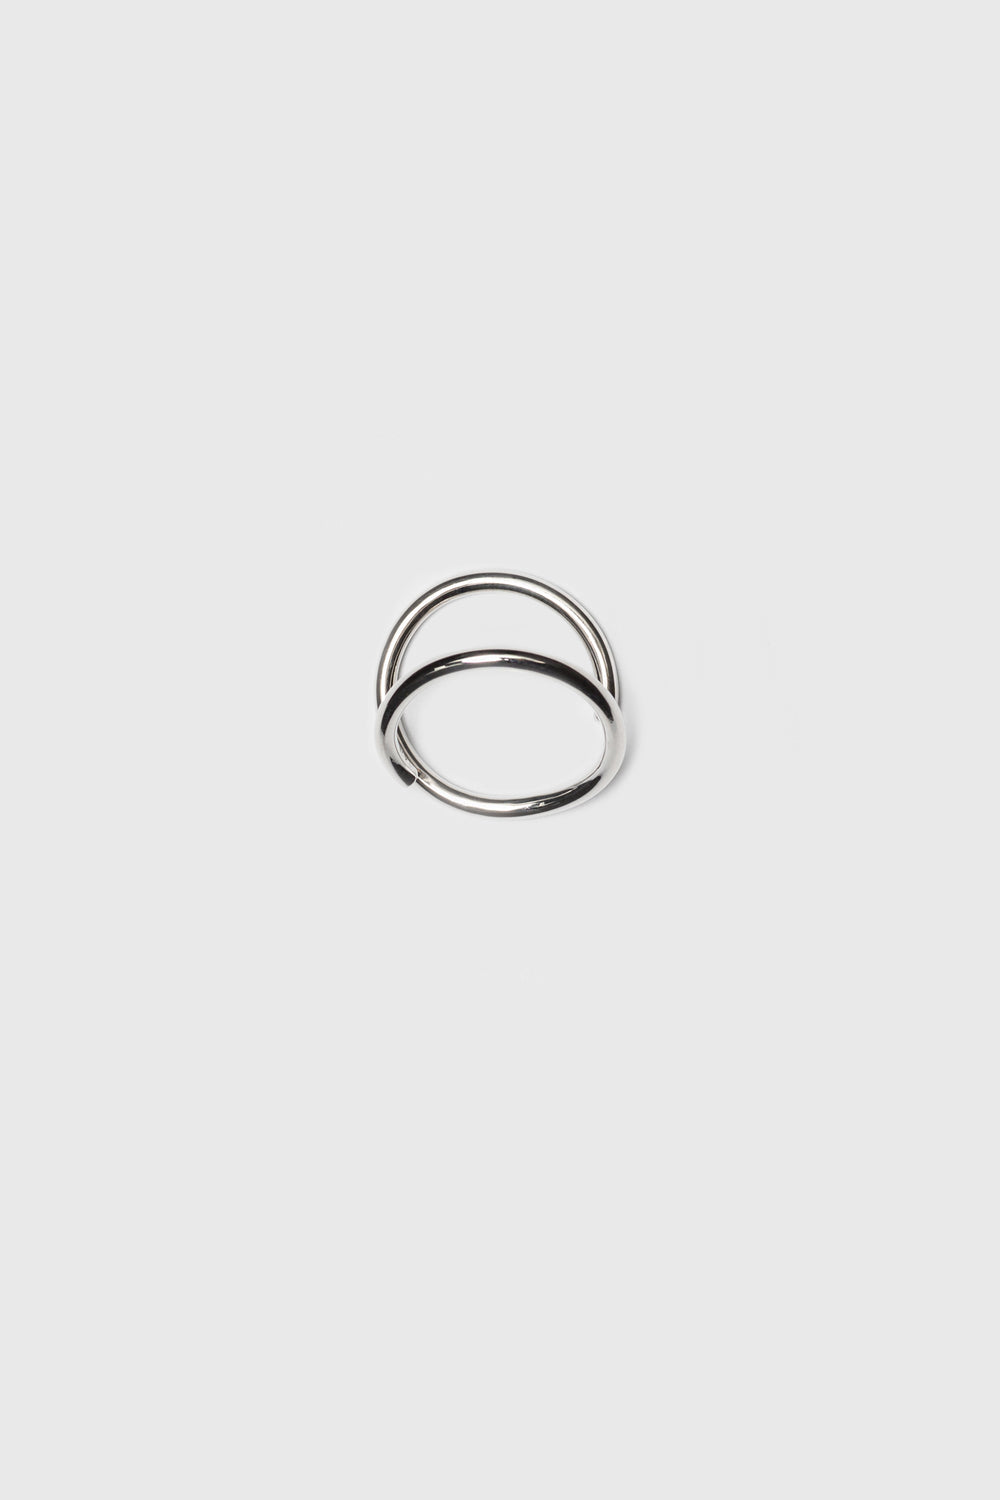 Open spiral ring. Silver jewelry handmade in Berlin.